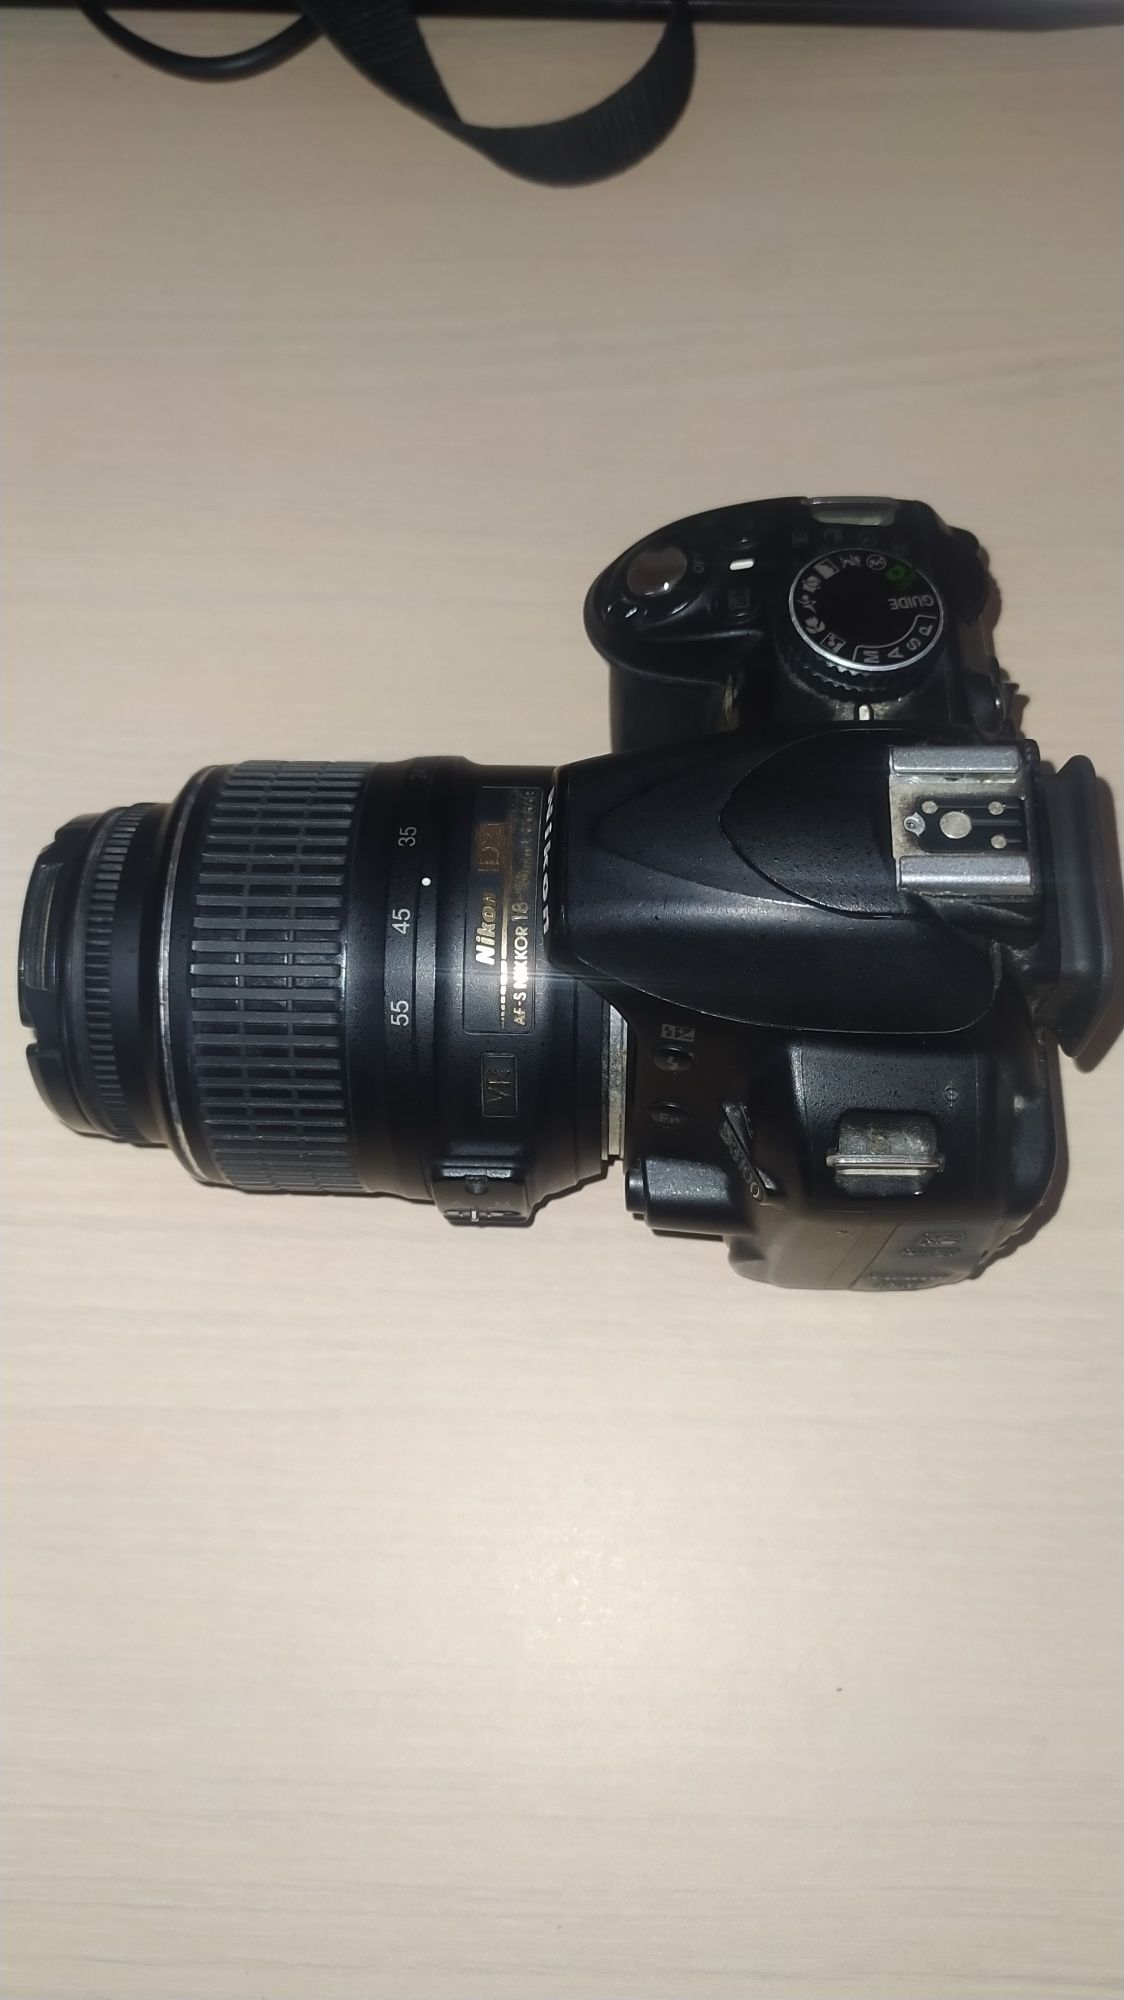 Aparat foto DSLR Nikon D3100